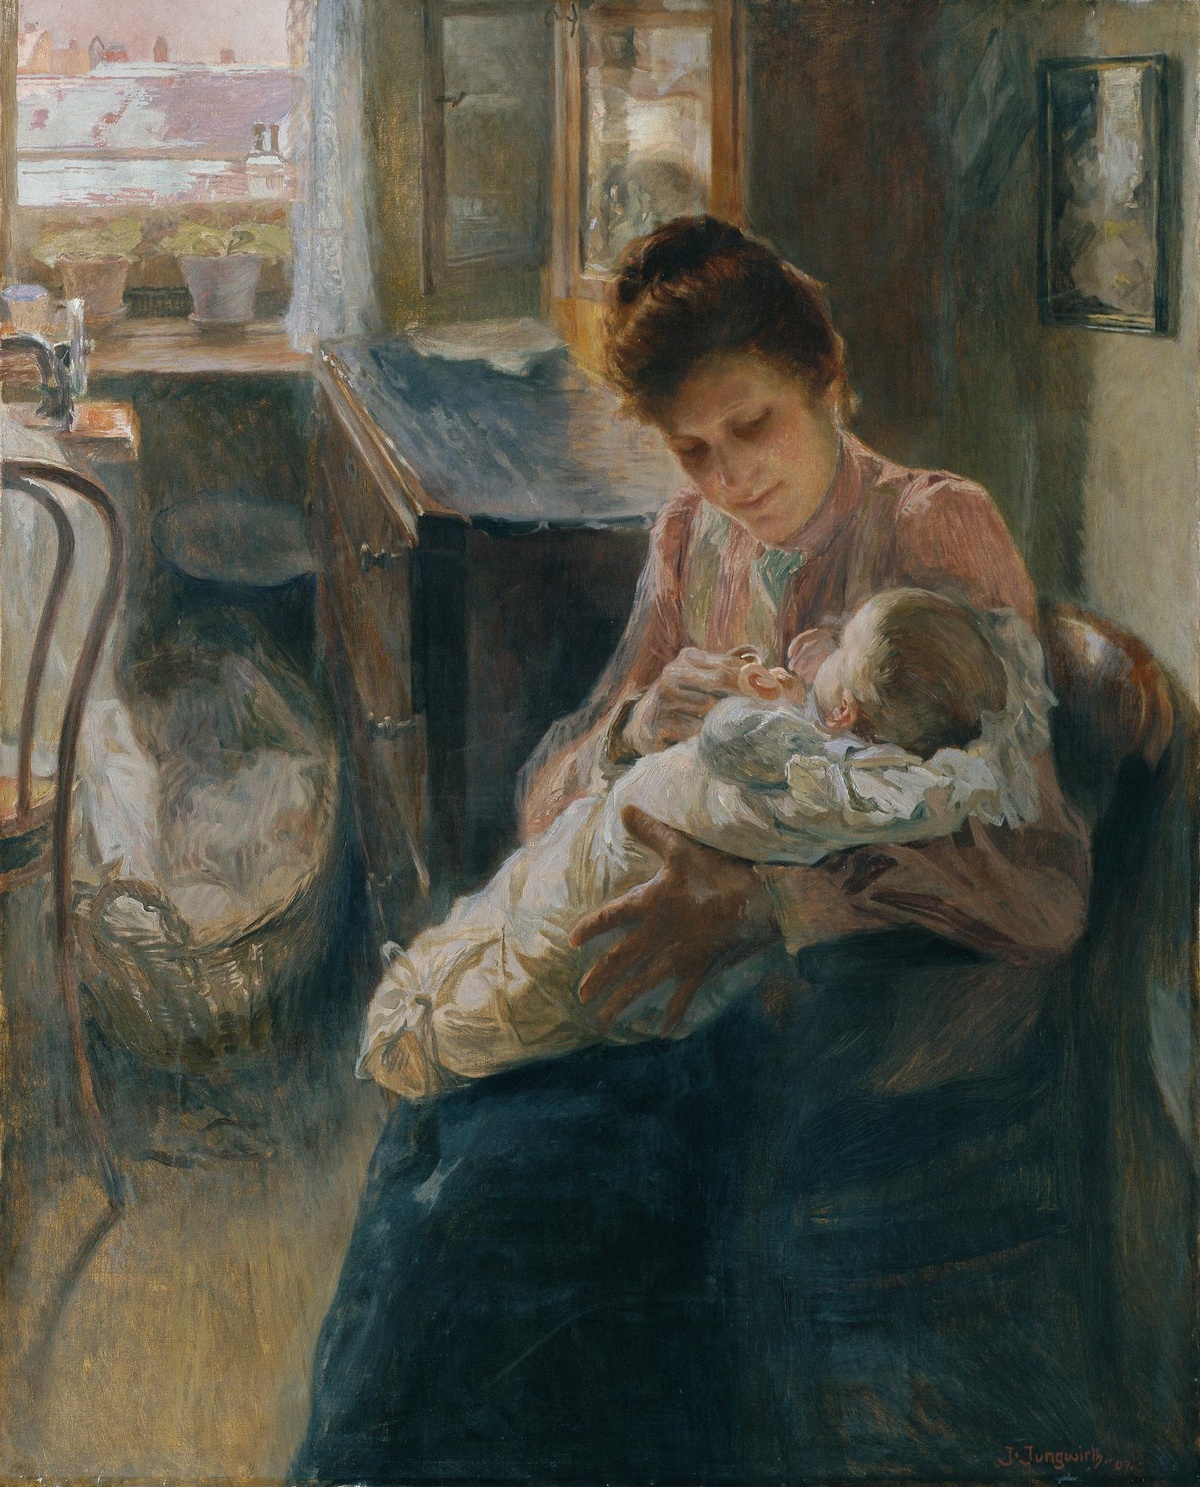 Eine Frau sitzt in einem Zimmer auf einem Sessel. Sie hat ein Baby Im Arm und schaut es an. Das Baby ist in weißen Stoff eingewickelt.  © Belvedere, CC BY 4.0 Wien, Junge Mutter, Öl auf Leinwand, Josef Jungwirth, 1907